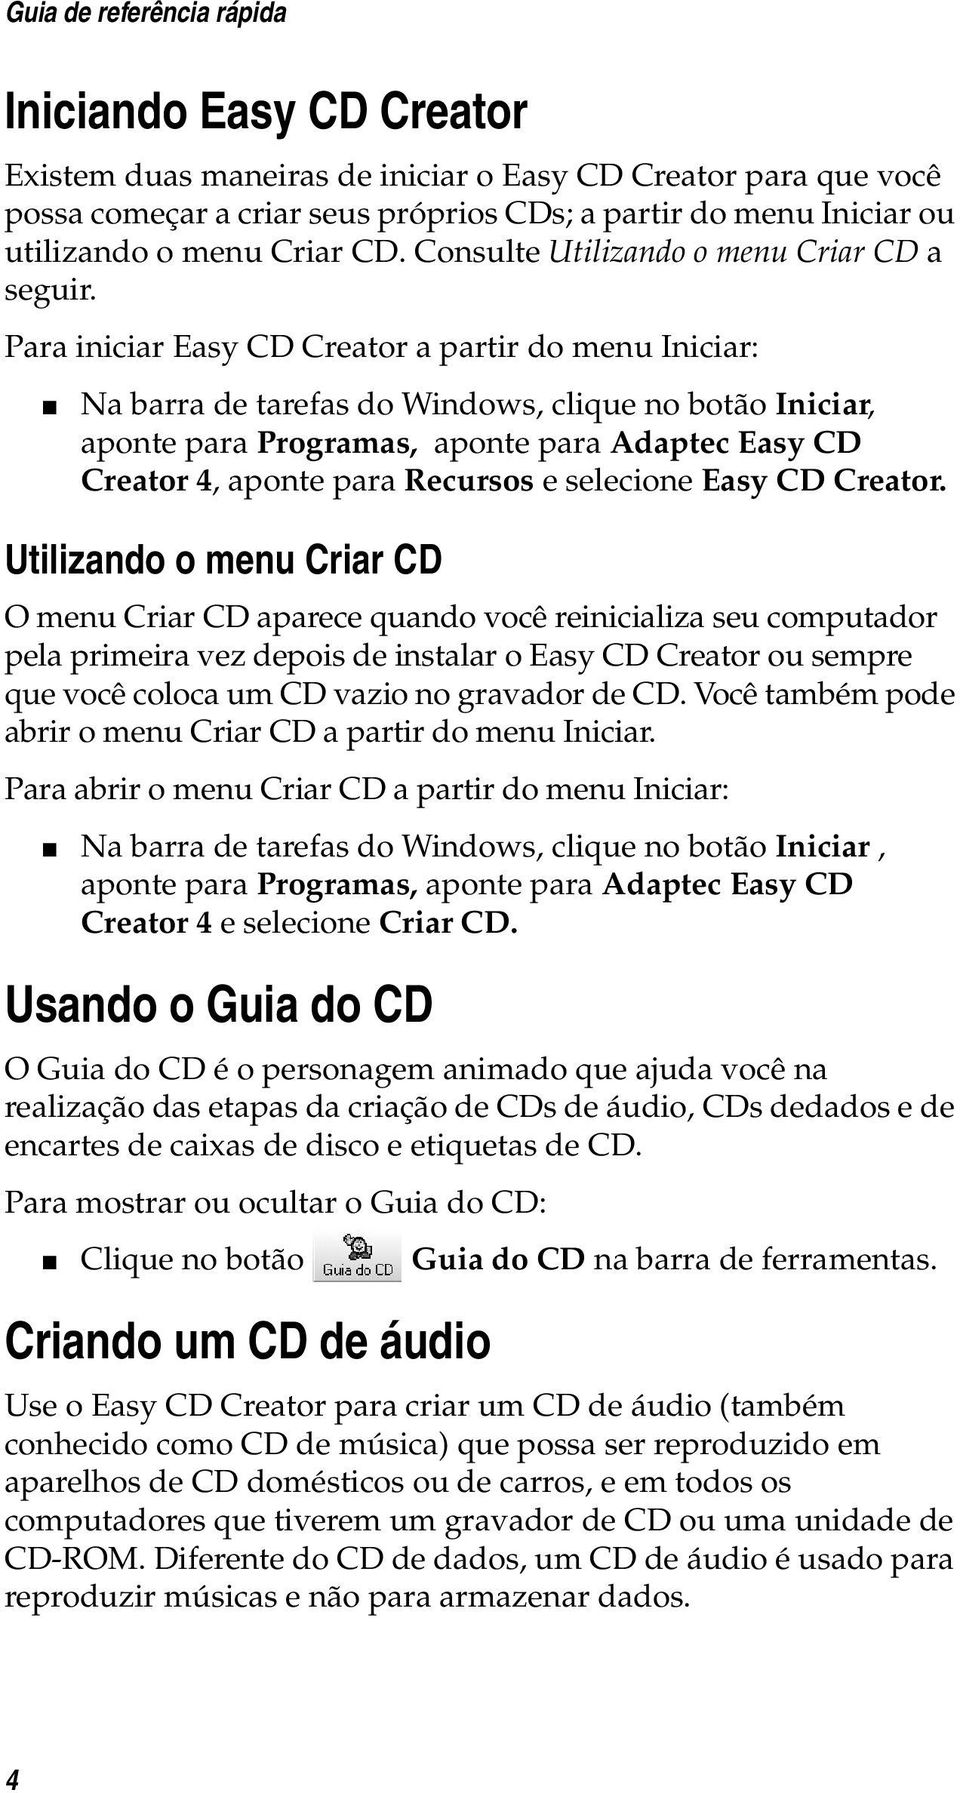 Para iniciar Easy CD Creator a partir do menu Iniciar: Na barra de tarefas do Windows, clique no botão Iniciar, aponte para Programas, aponte para Adaptec Easy CD Creator 4, aponte para Recursos e